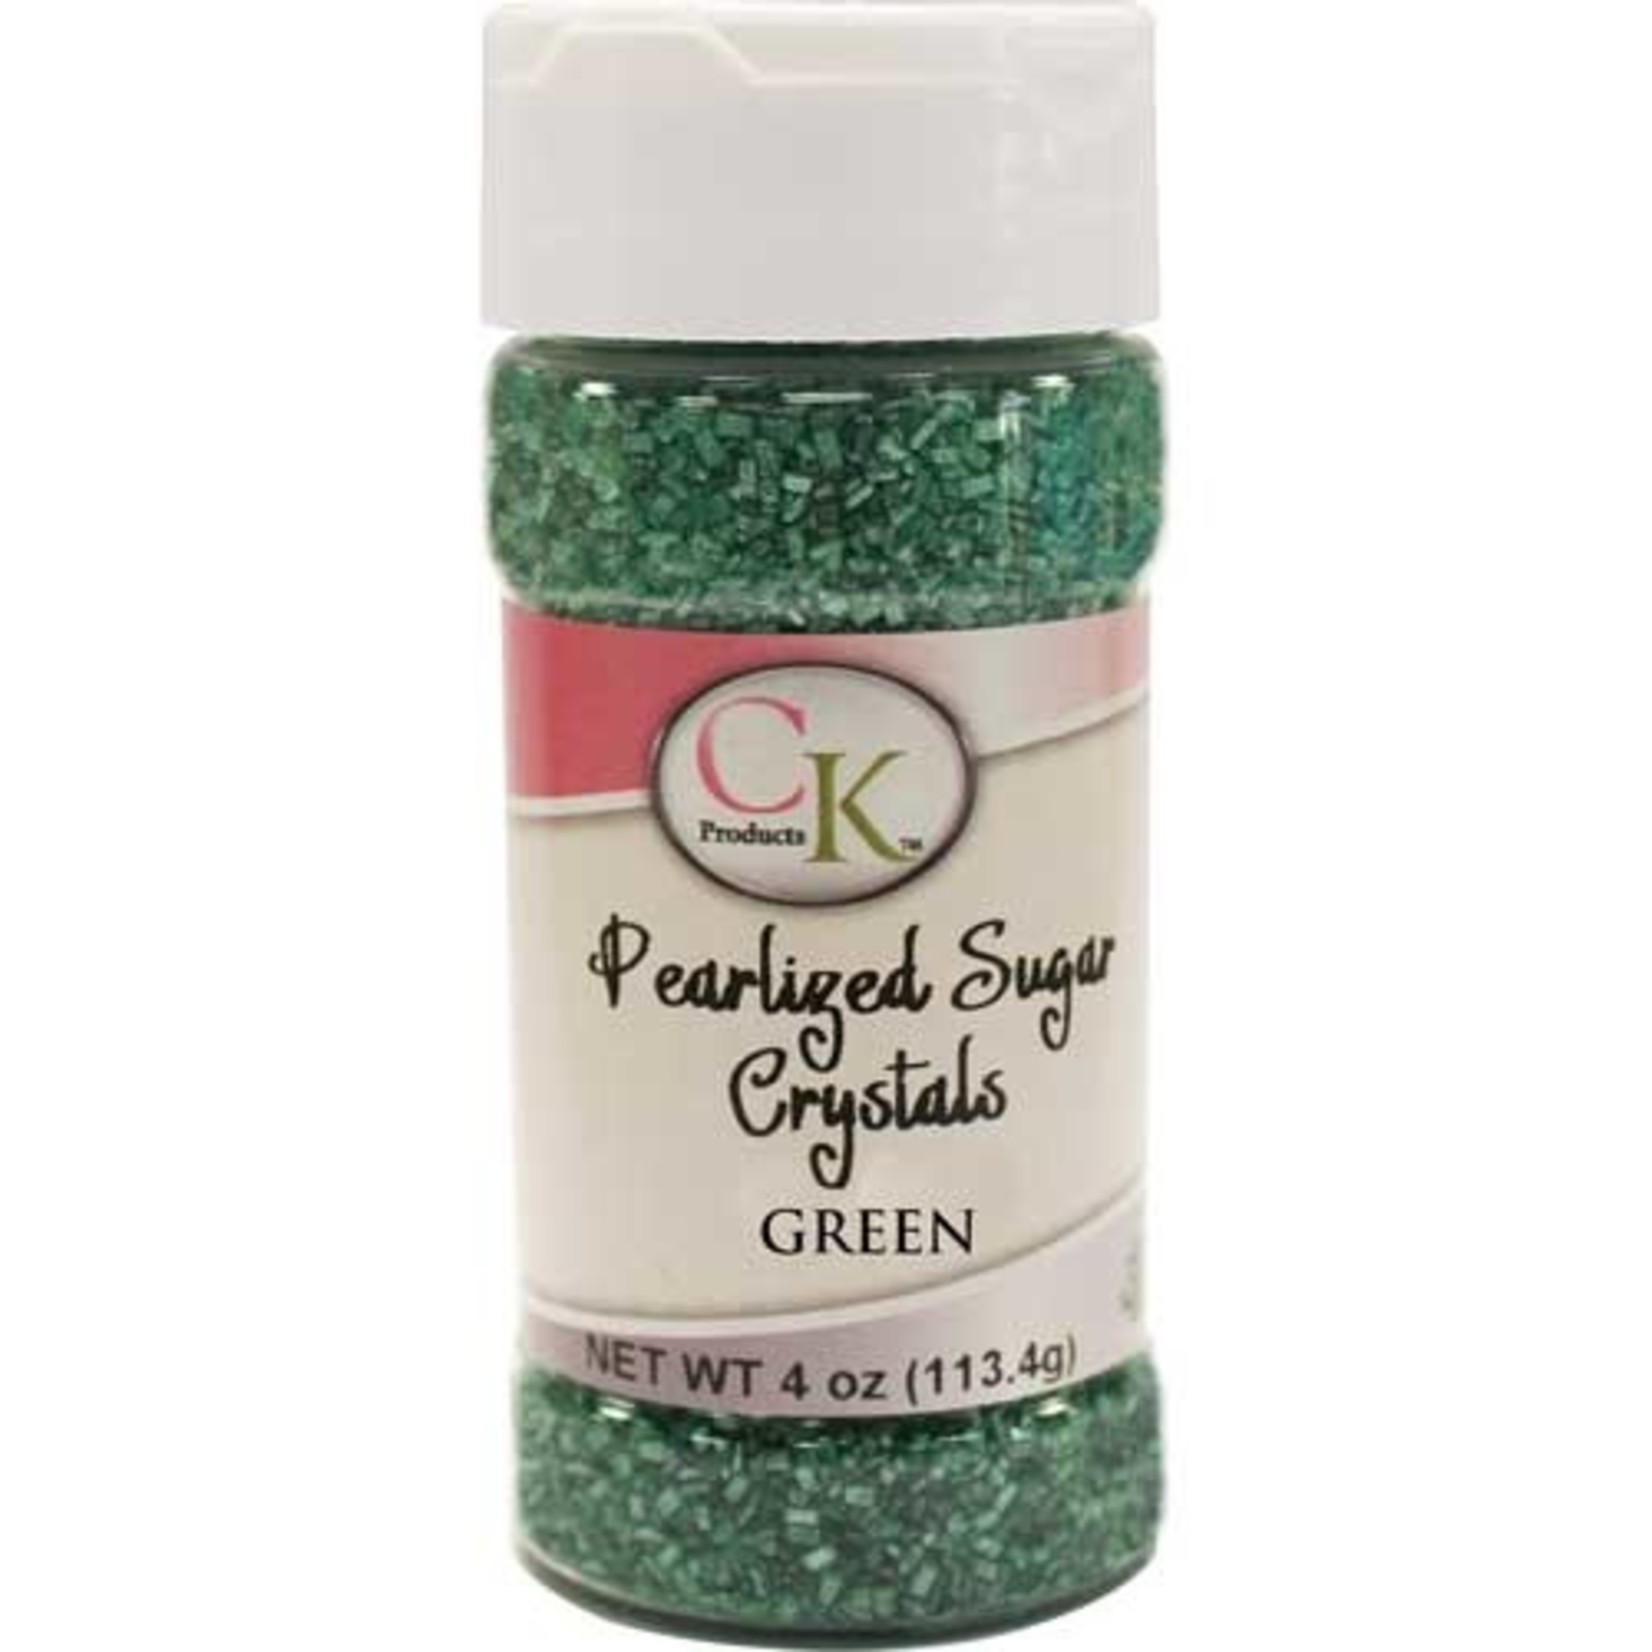 CK Green Pearlized Sugar Cystals